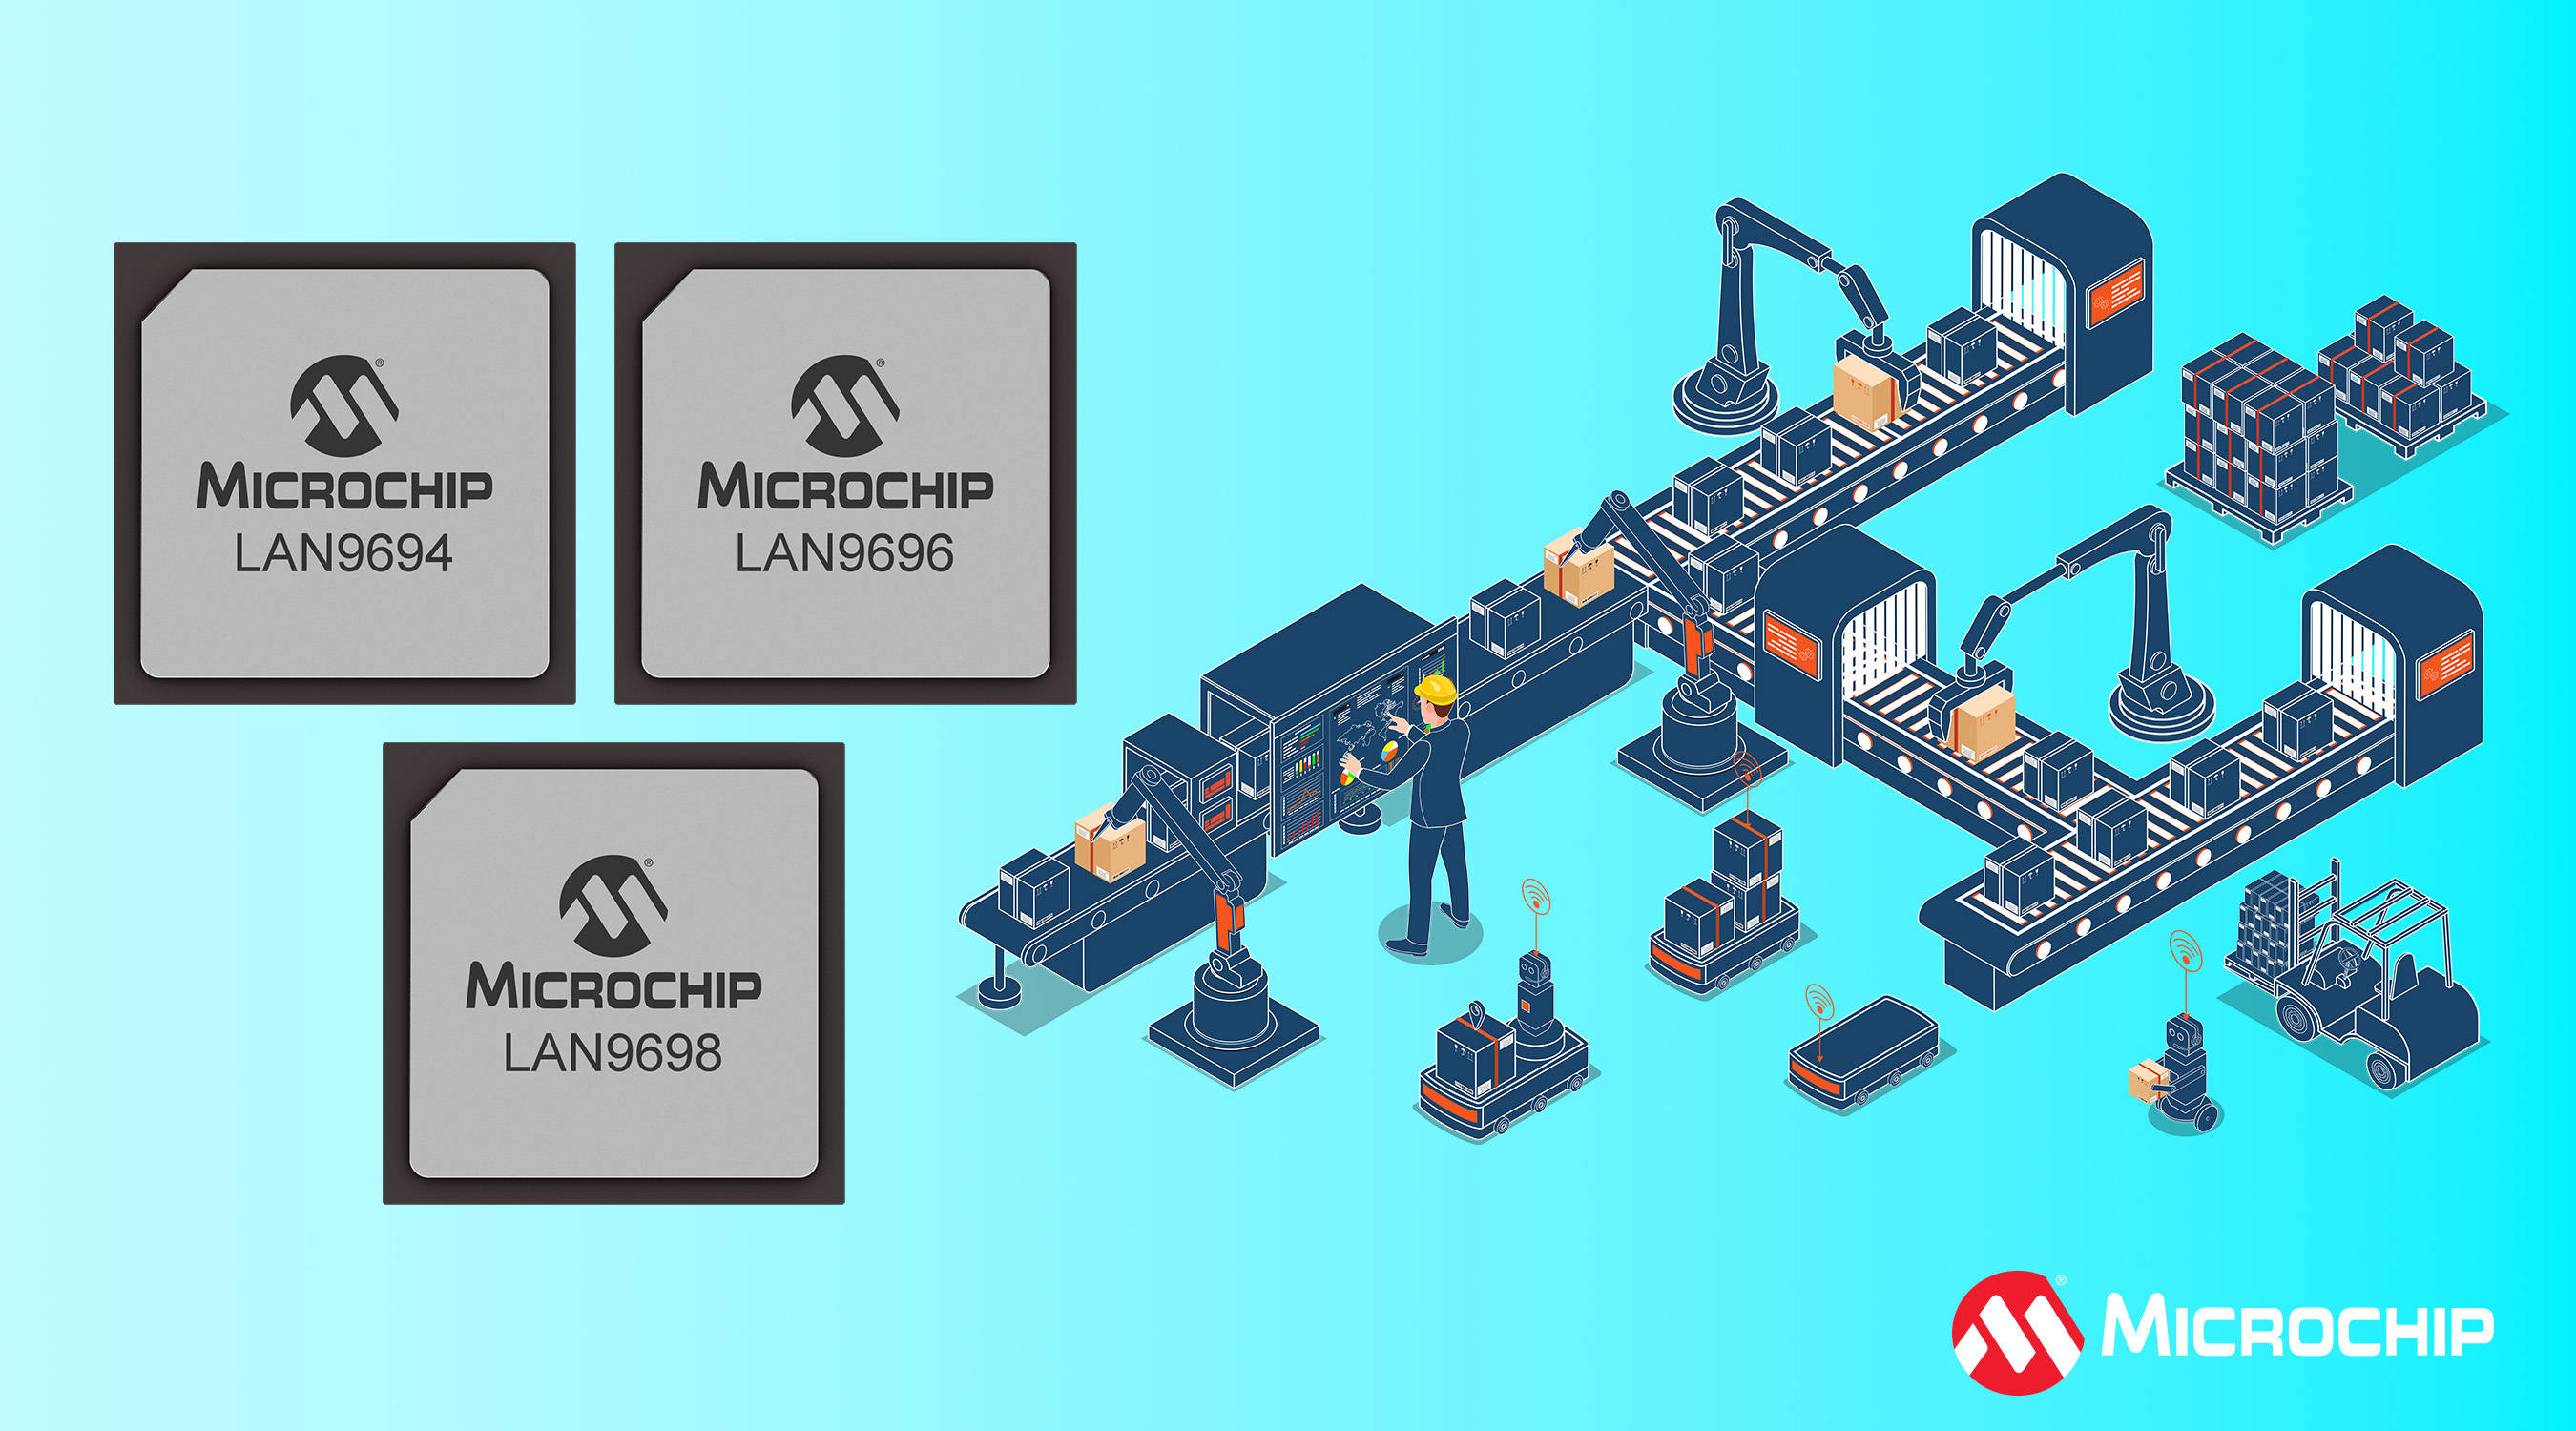 新品 | Microchip推出下一代以太网交换机系列LAN969x